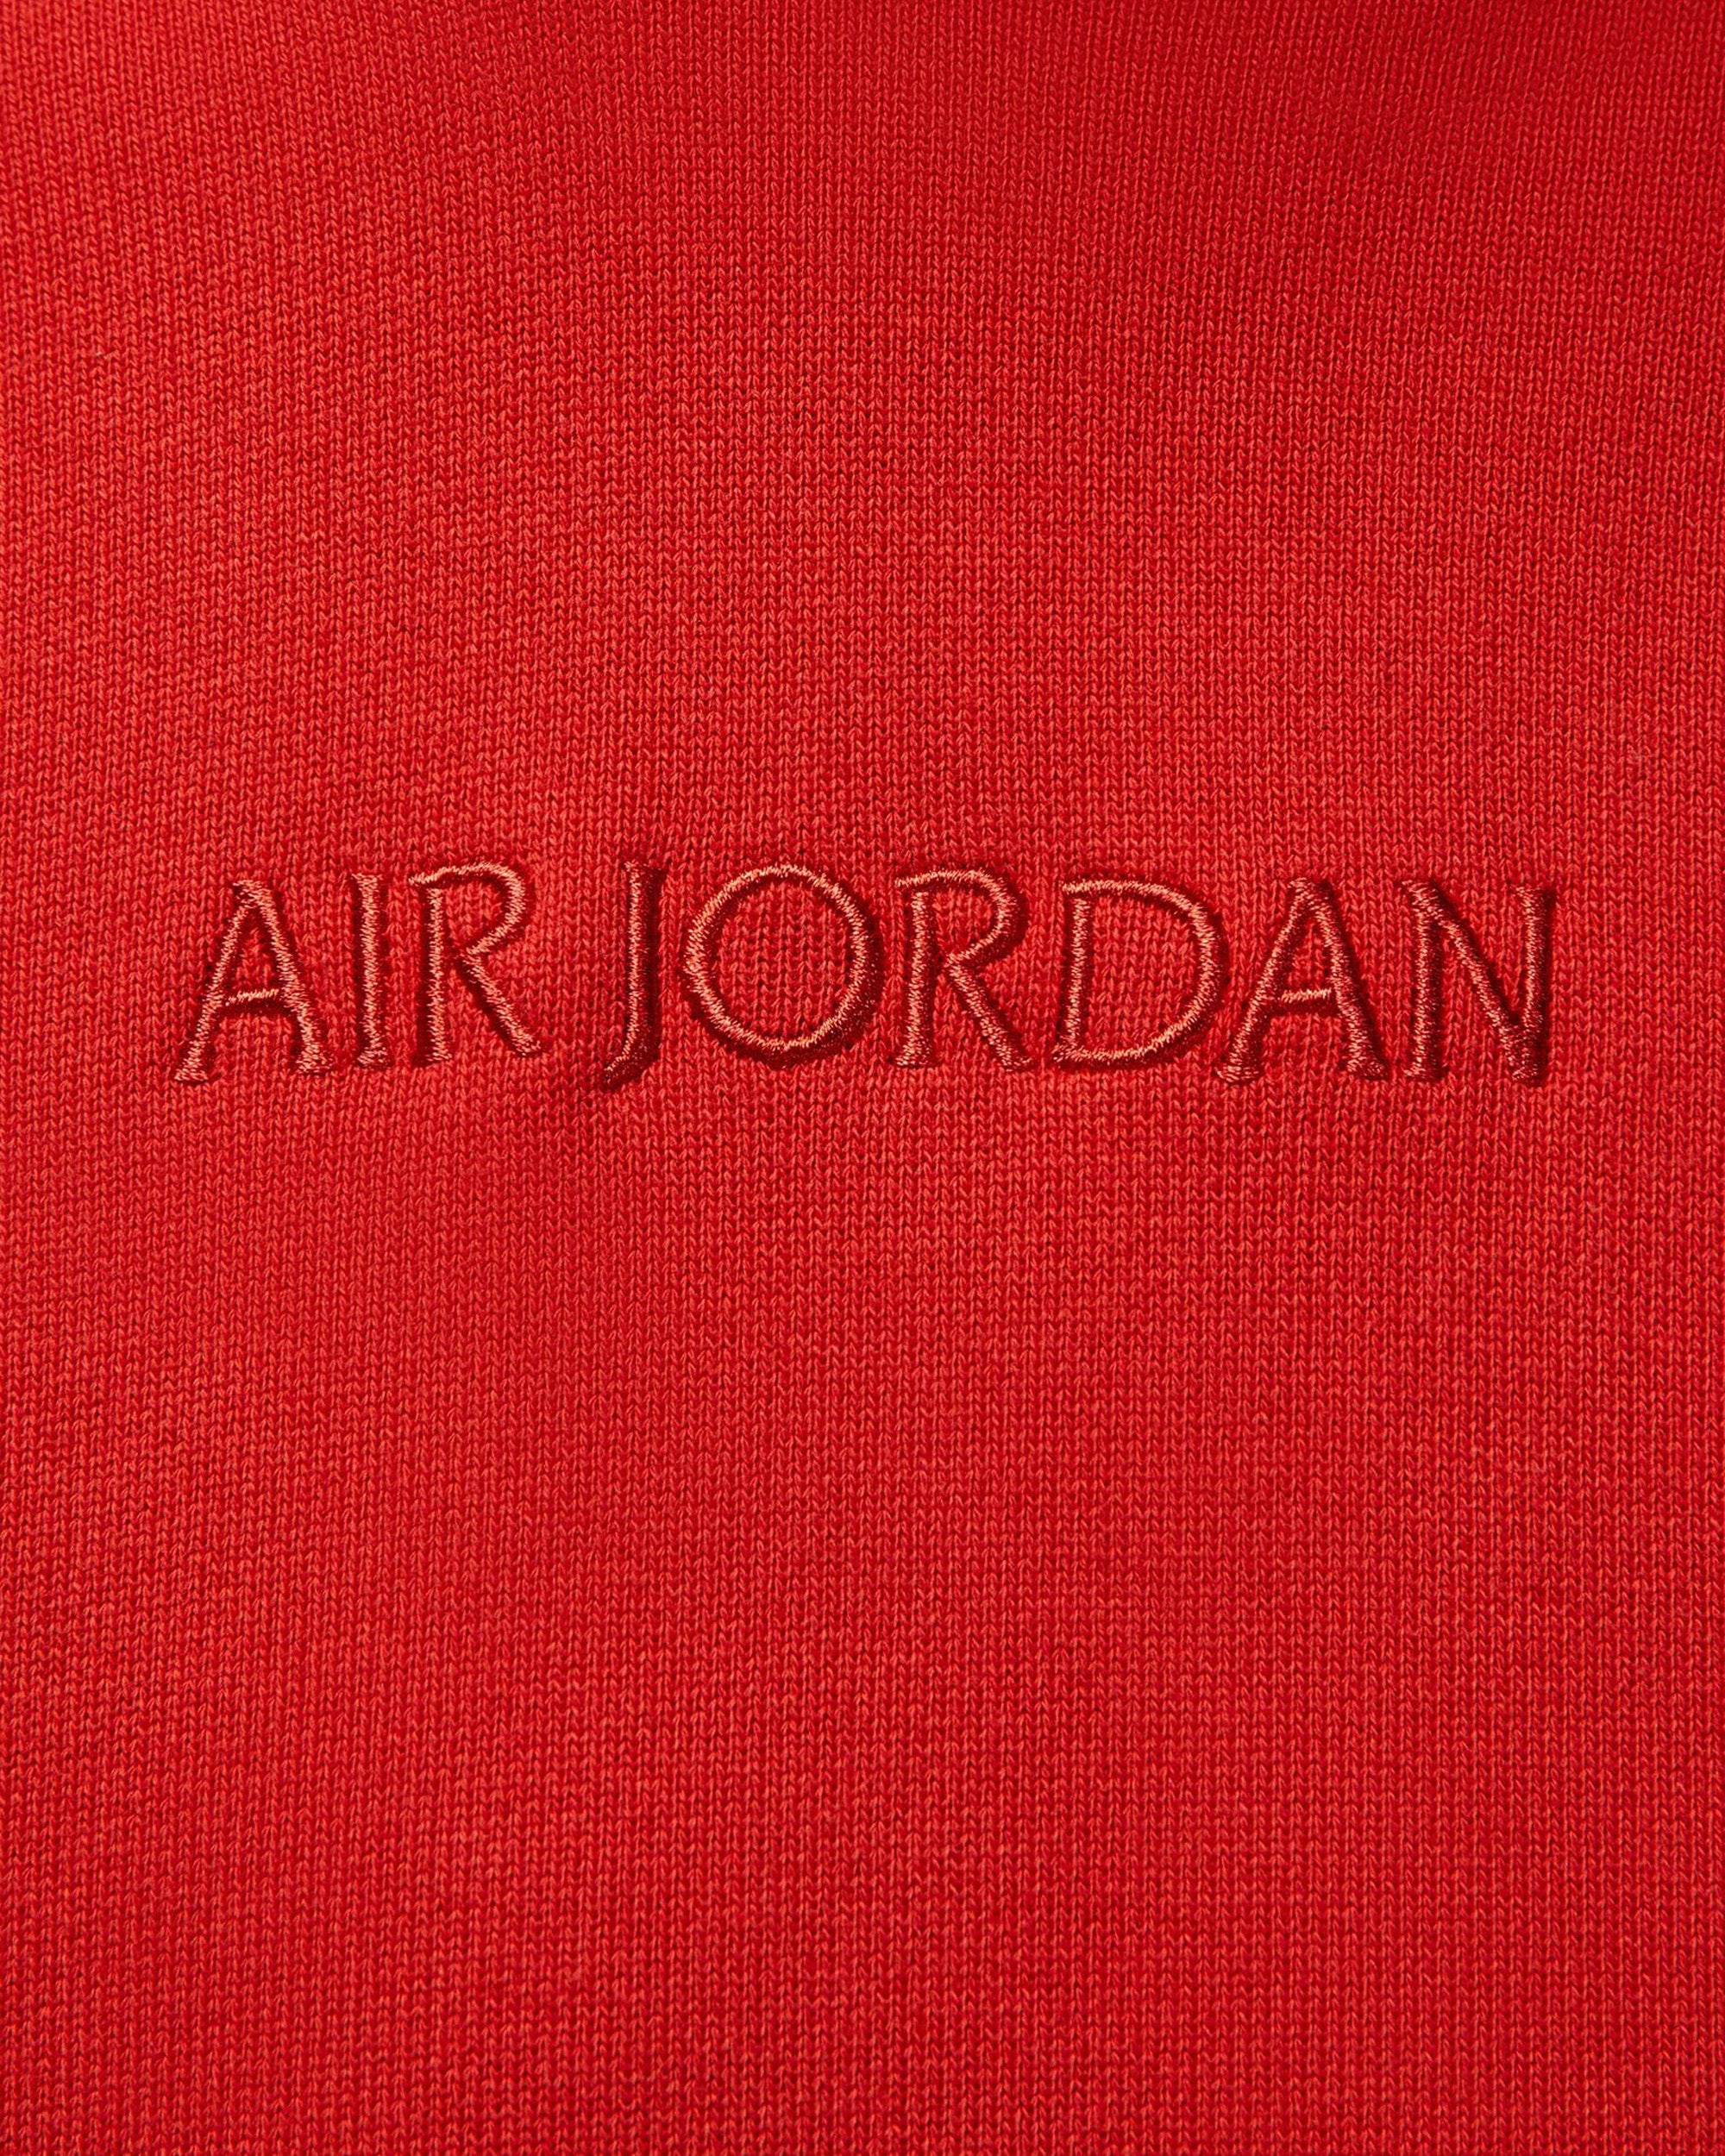 Jordan Brand Air Jordan Long Sleeve T-shirt MYSTIC RED FJ0702-622